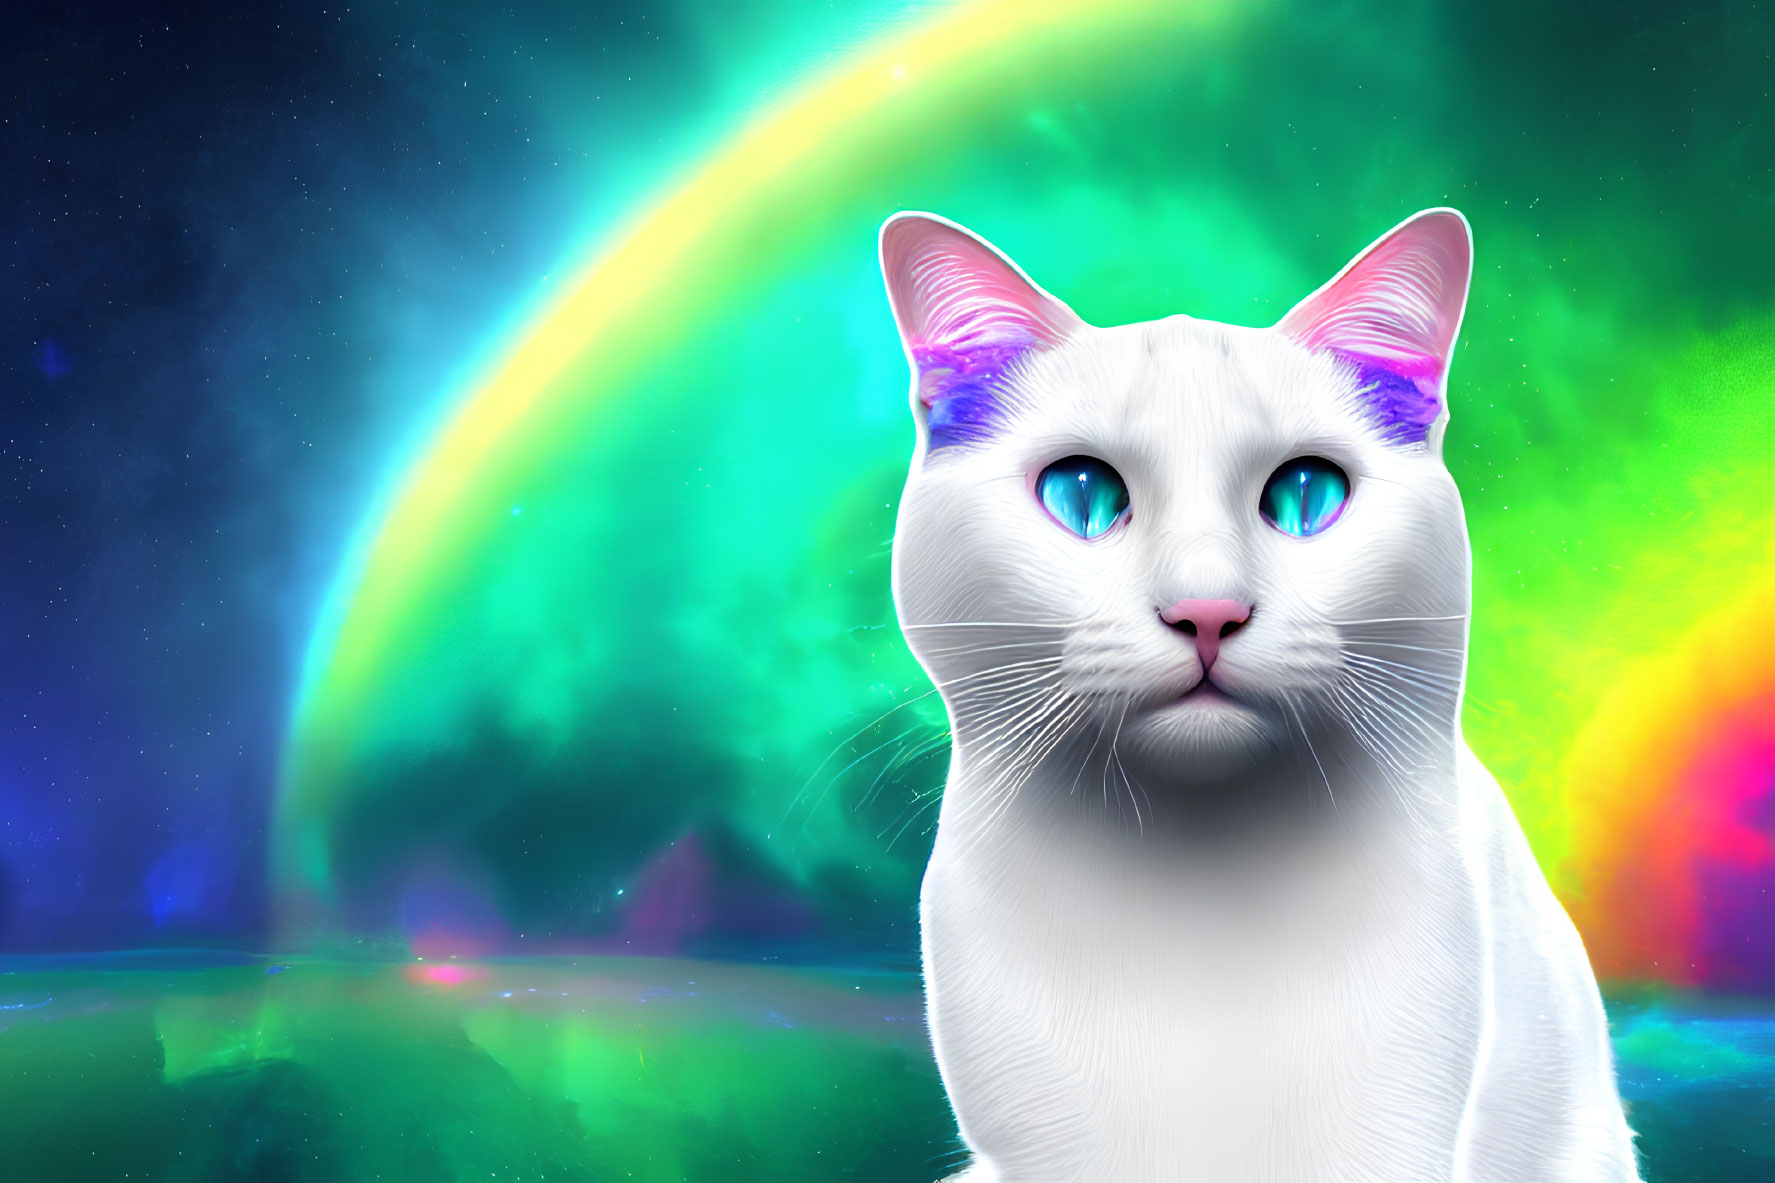 White Cat with Blue Eyes on Aurora Borealis Background